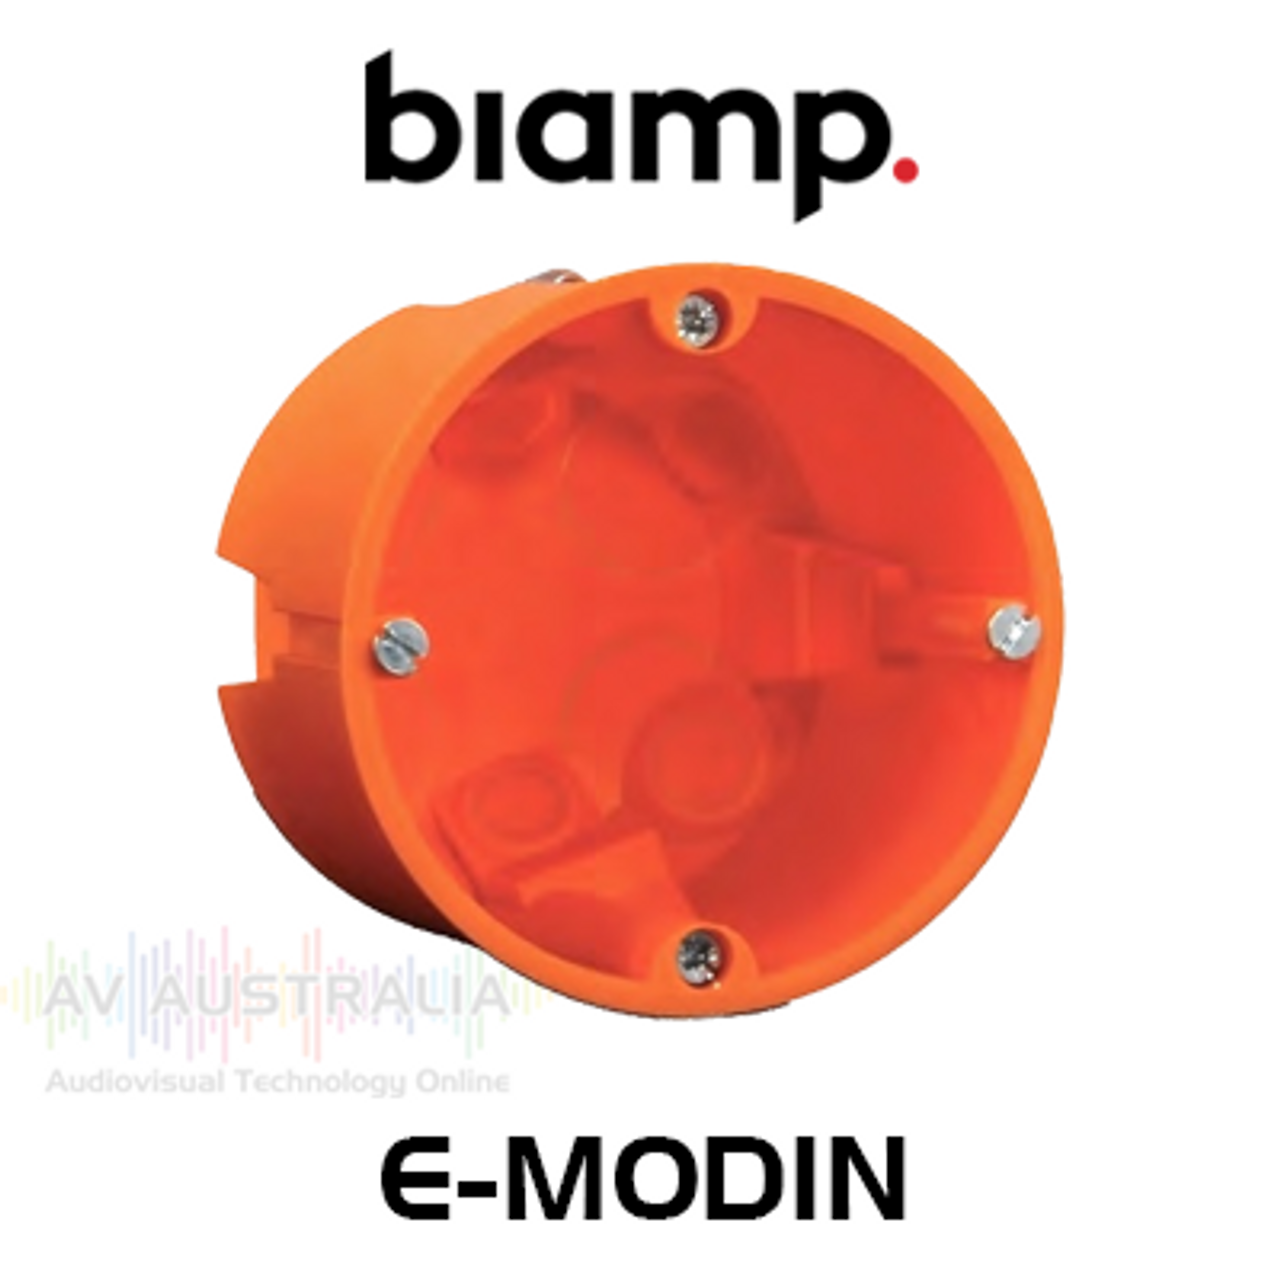 Biamp E-MODIN In-Wall Back Box For Euro Controls